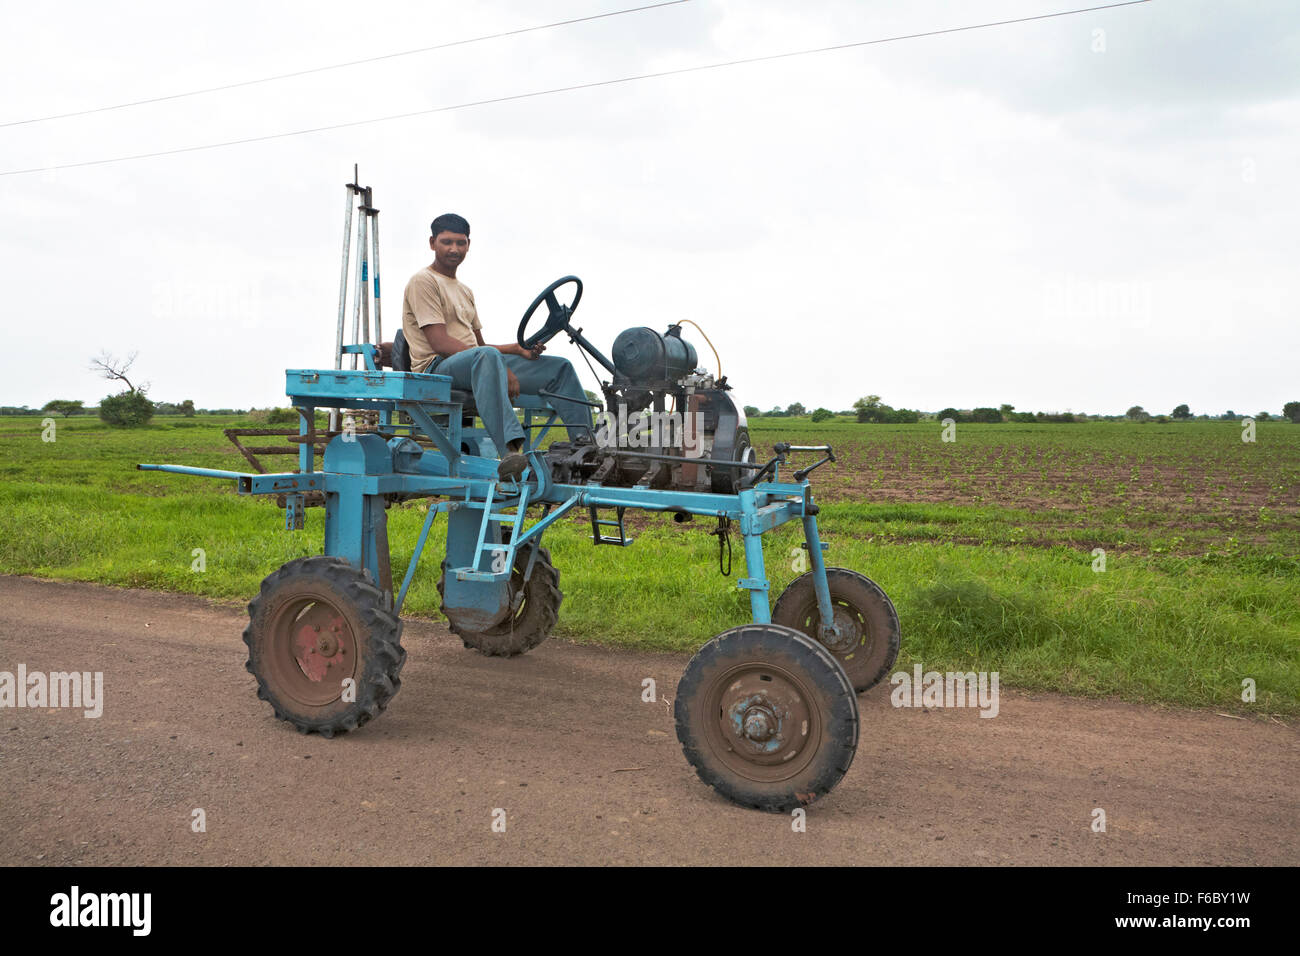 Homme assis sur le tracteur, Gujarat, Inde, Asie Banque D'Images